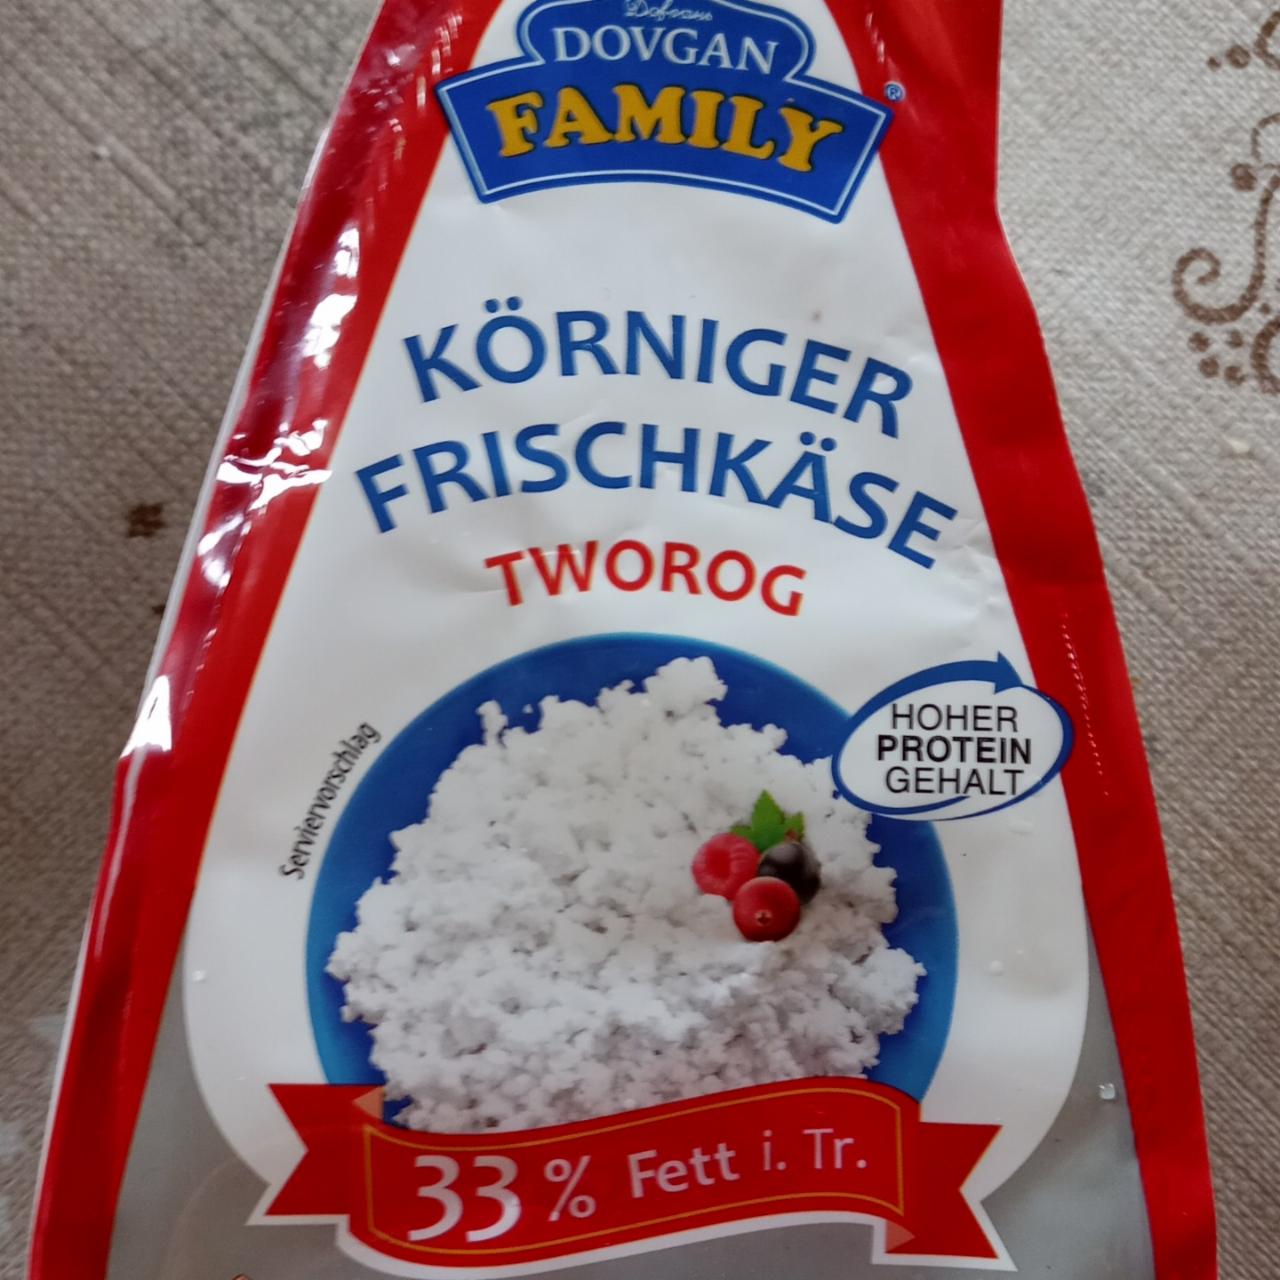 Fotografie - Körniger Frischkäse tworog Dovgan Family